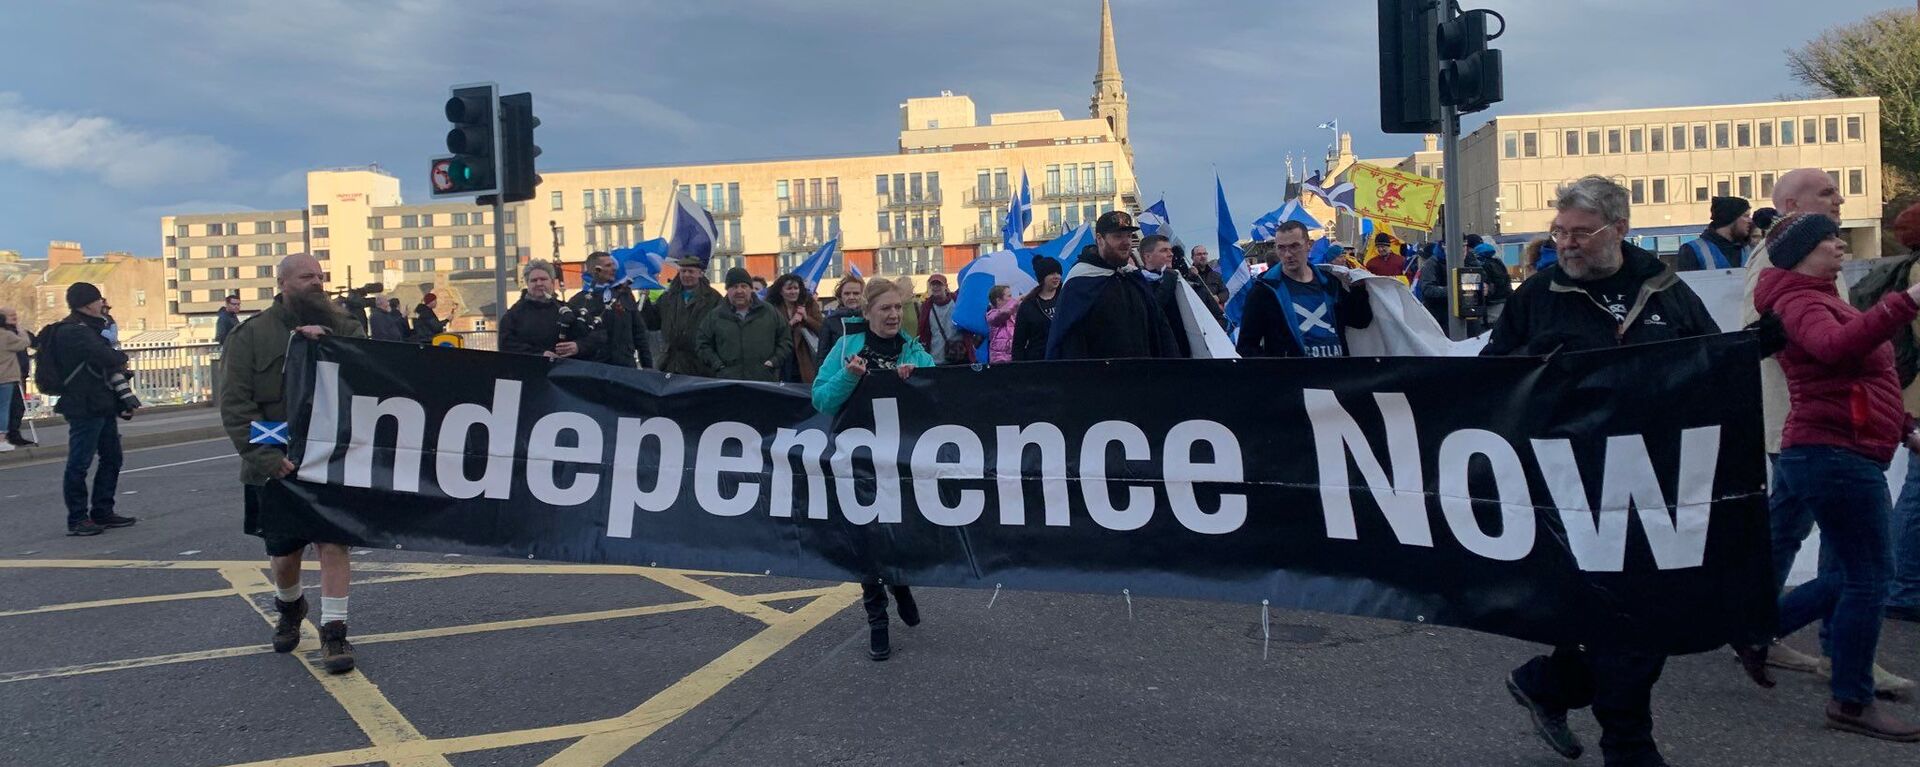 Freedom March for Scottish Independence in Inverness, the Scottish Highlands - Sputnik International, 1920, 03.05.2021